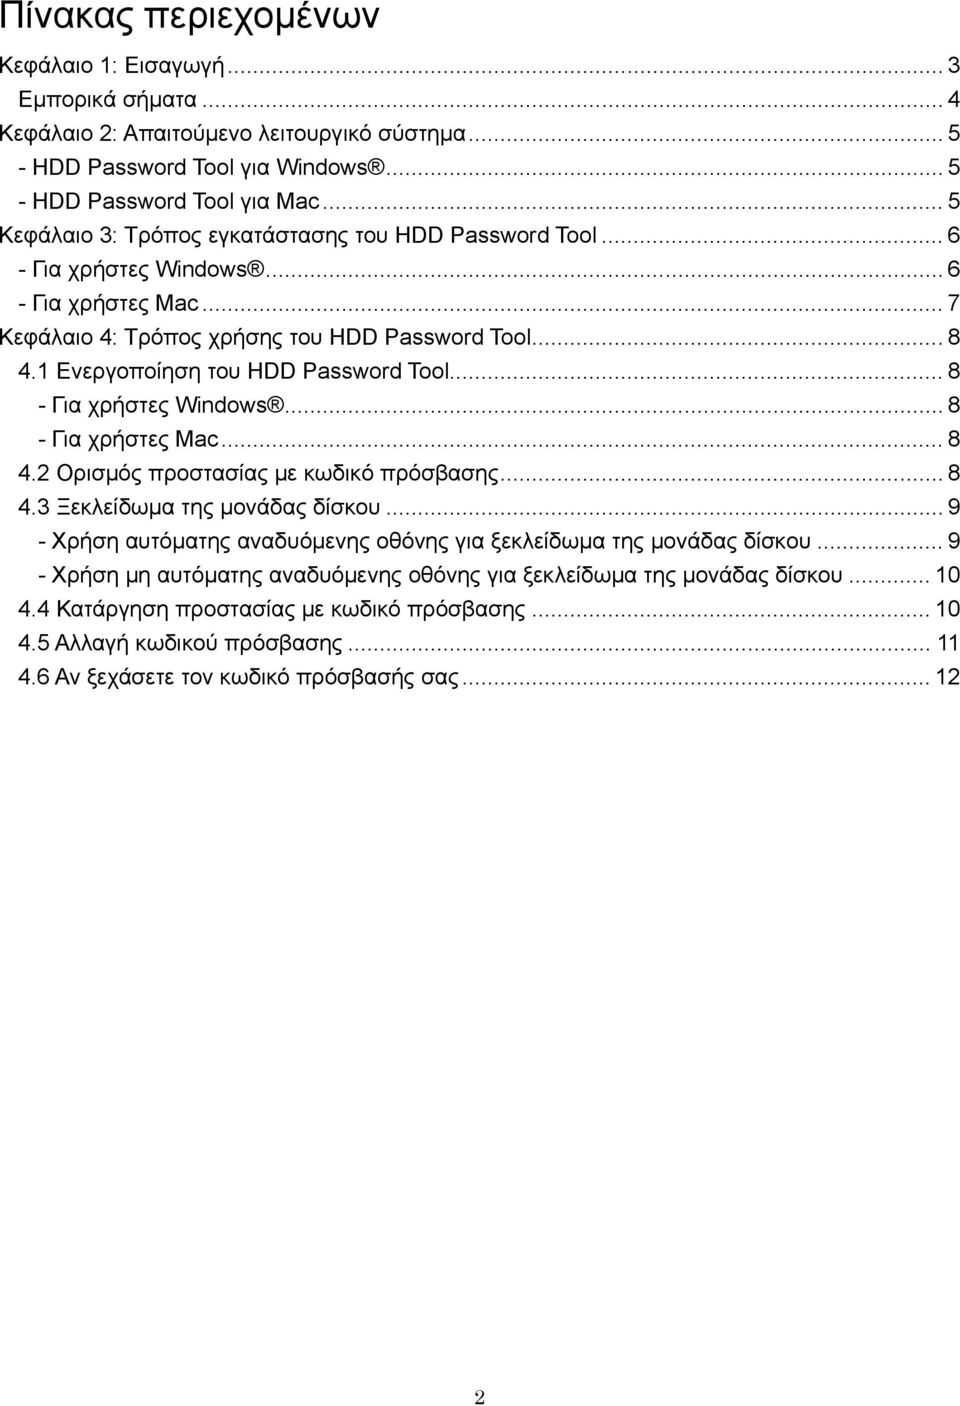 1 Ενεργοποίηση του HDD Password Tool... 8 - Για χρήστες Windows... 8 - Για χρήστες Mac... 8 4.2 Ορισμός προστασίας με κωδικό πρόσβασης... 8 4.3 Ξεκλείδωμα της μονάδας δίσκου.